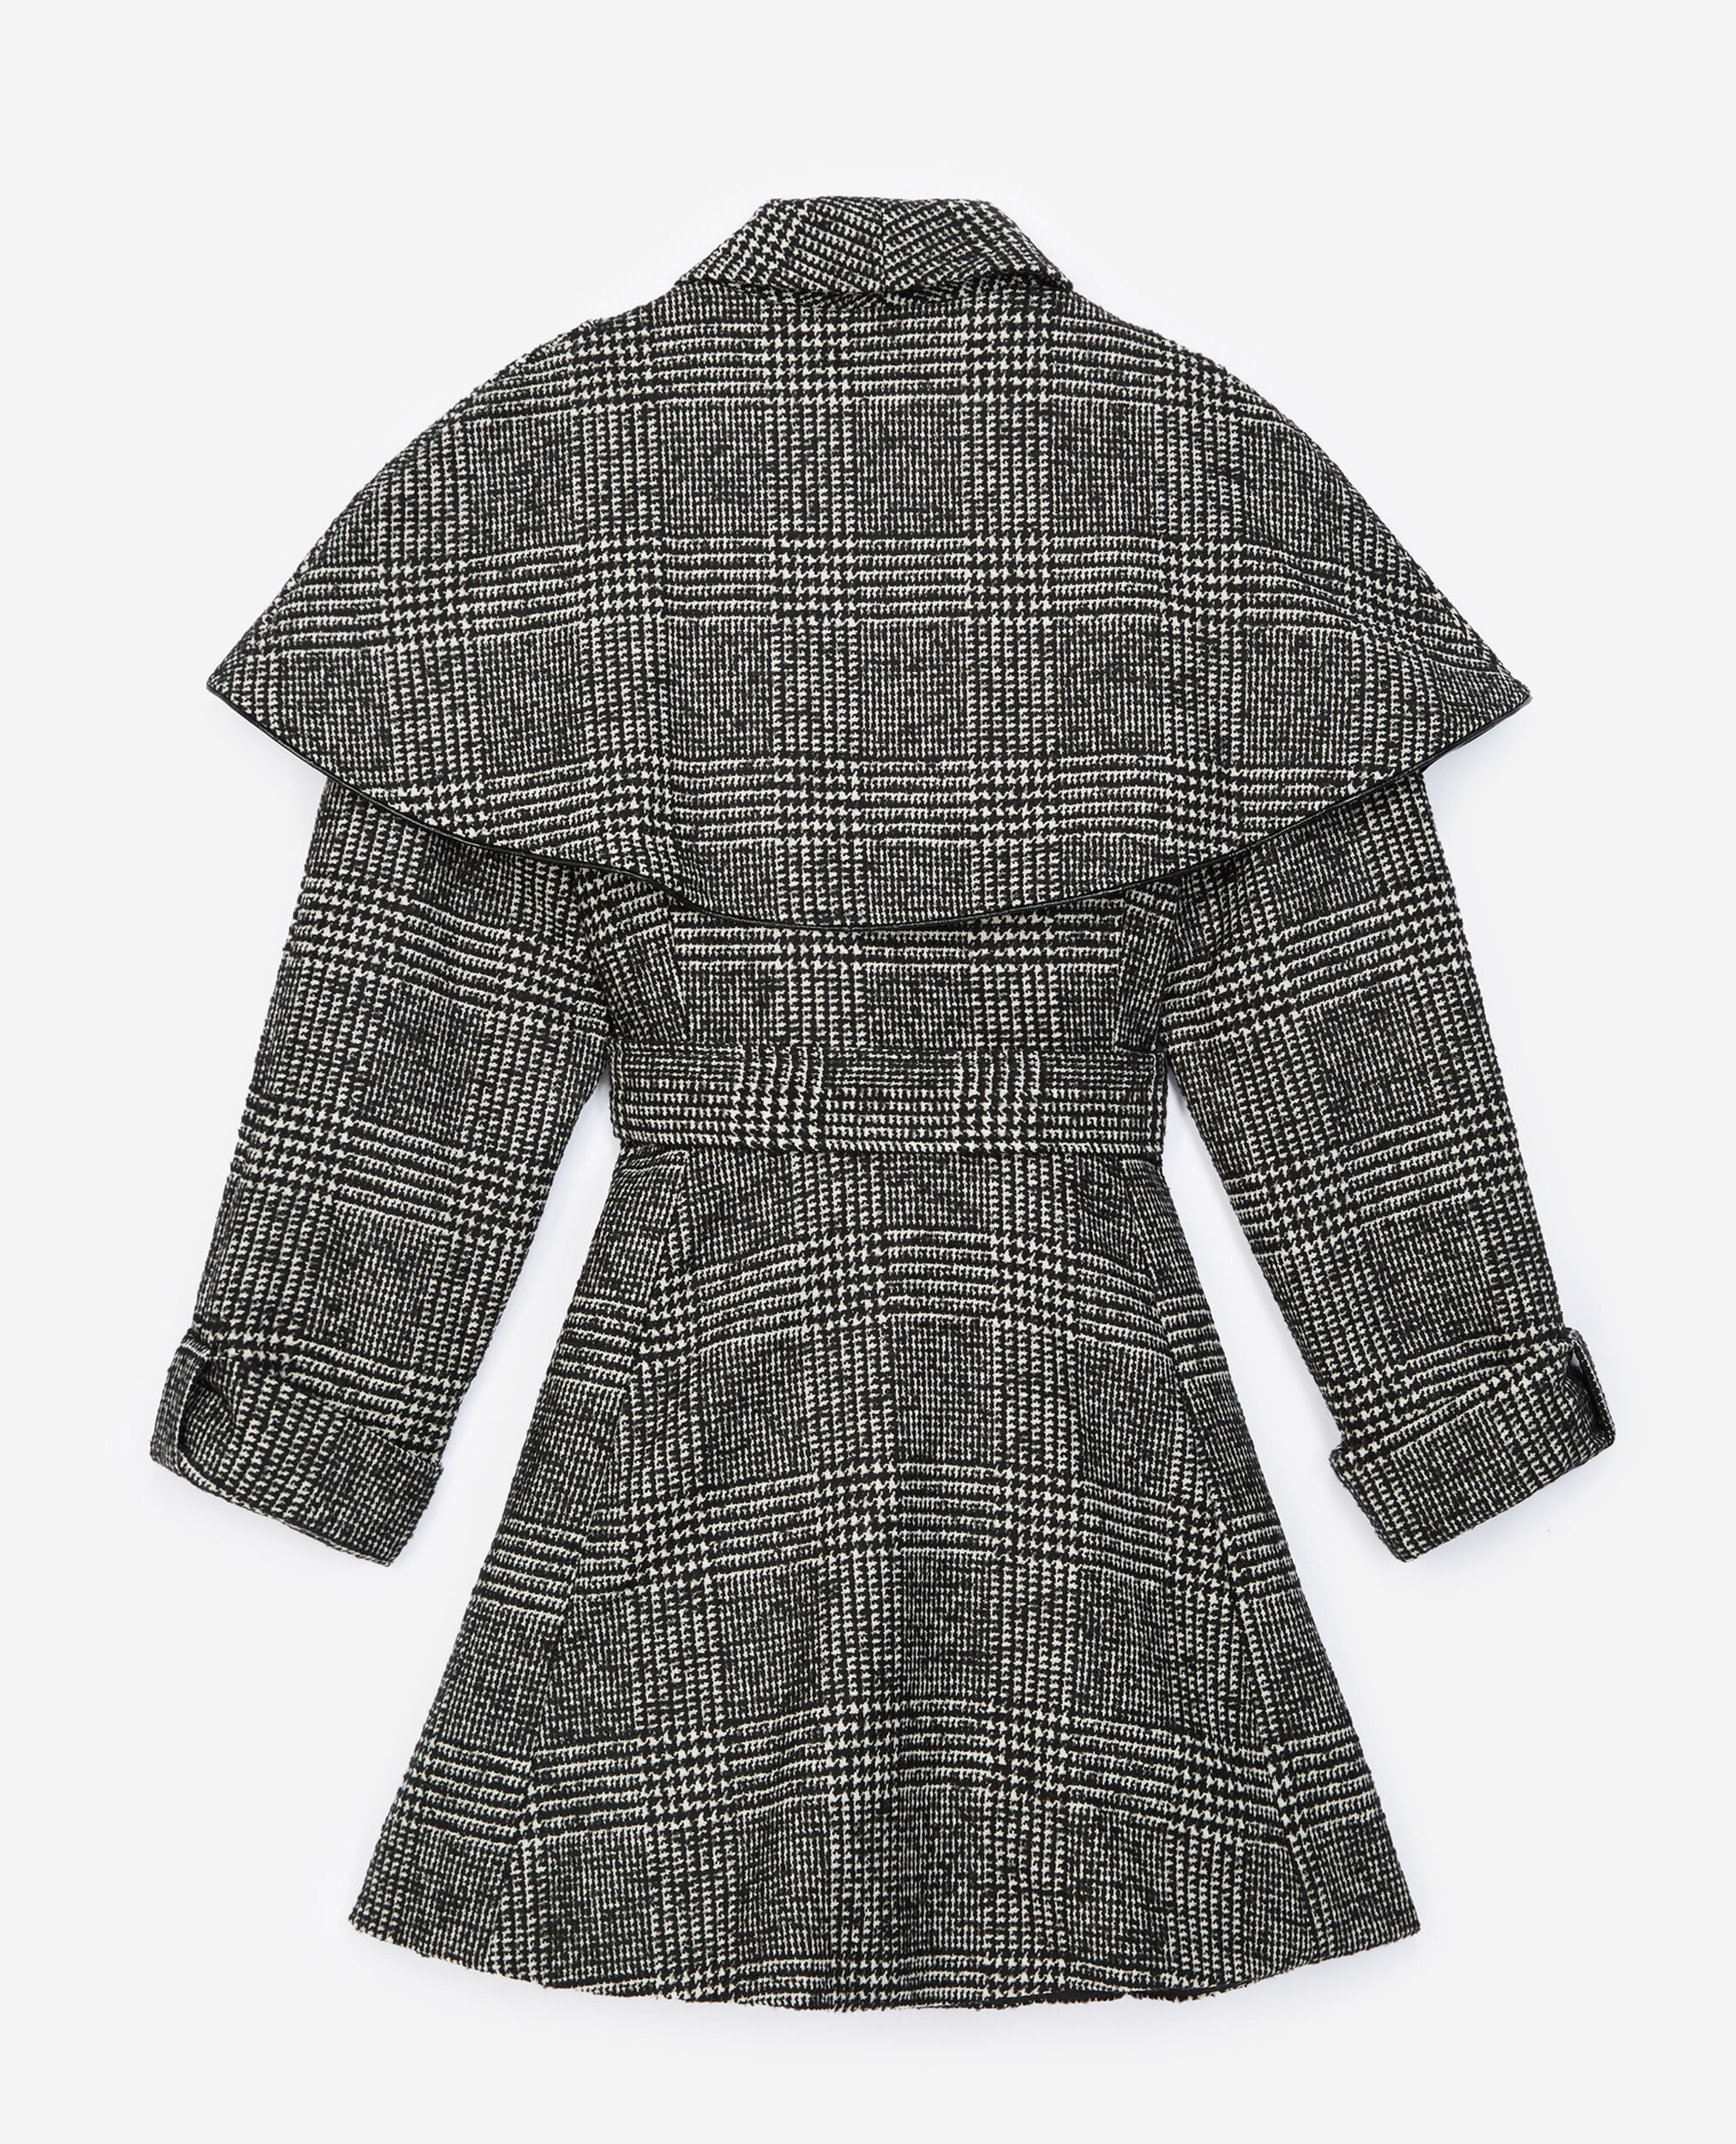 Manteau laine bicolore façon cape, BLACK WHITE, hi-res image number null